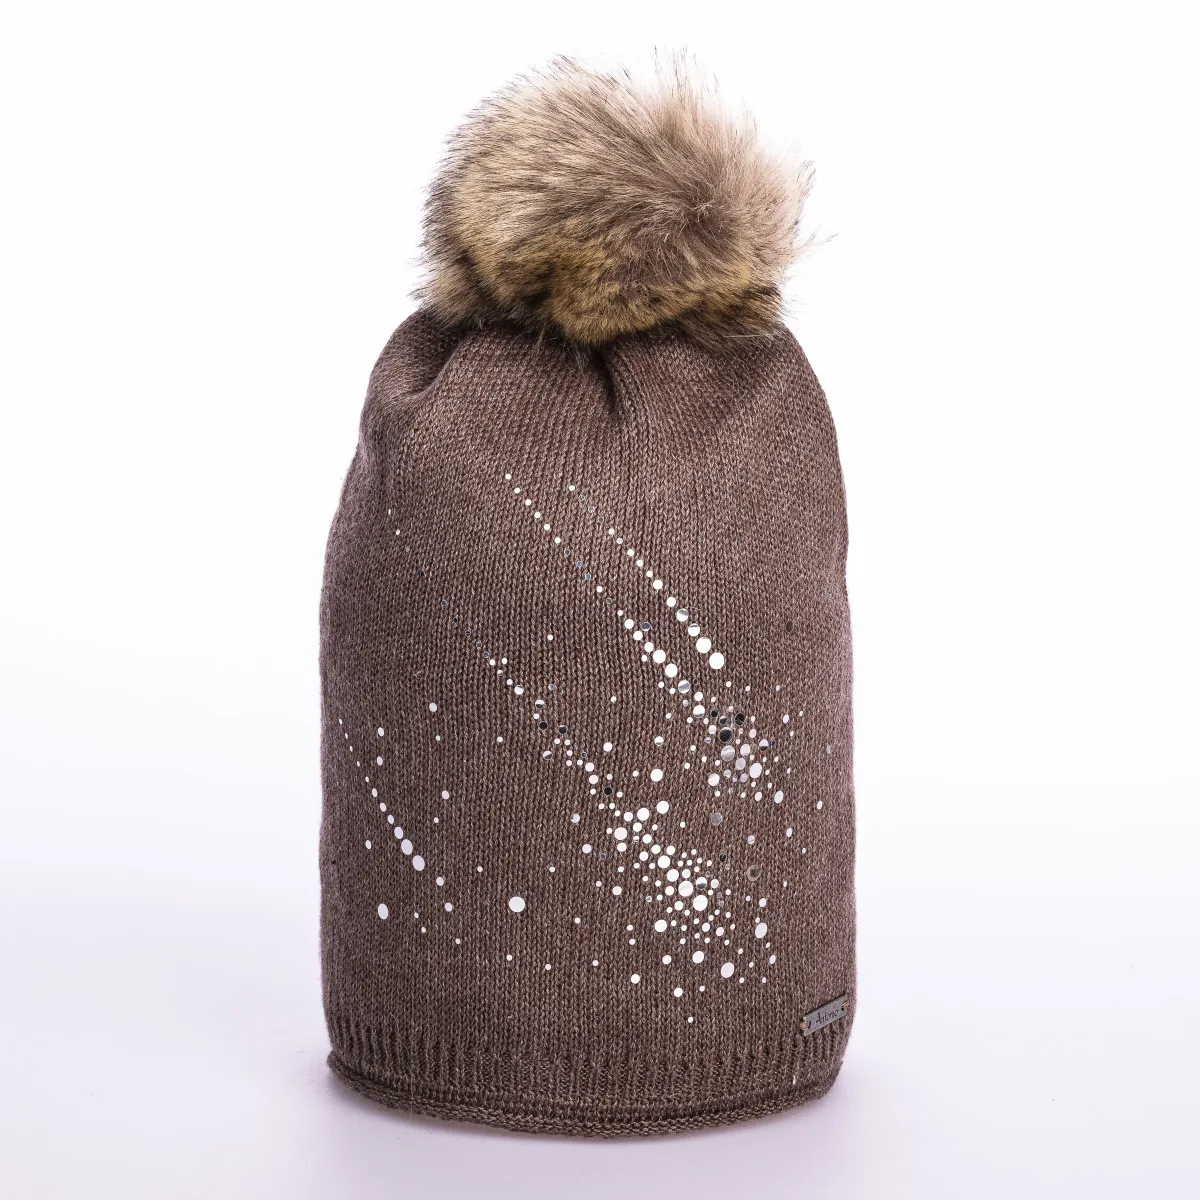 Zimowa czapka z pomponem i brokatem - brązowa - Rozmiar uni